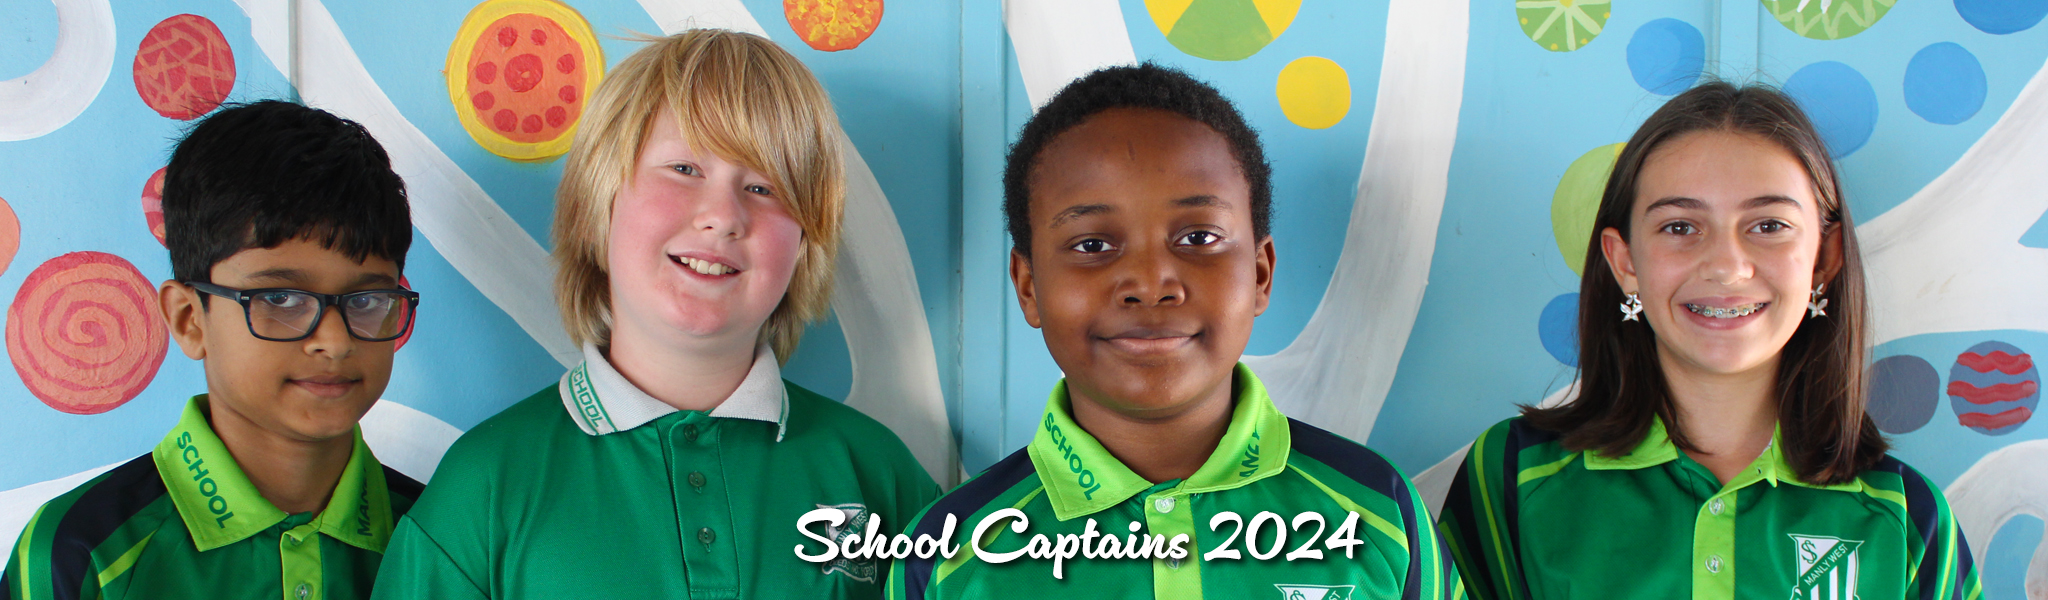 School captains